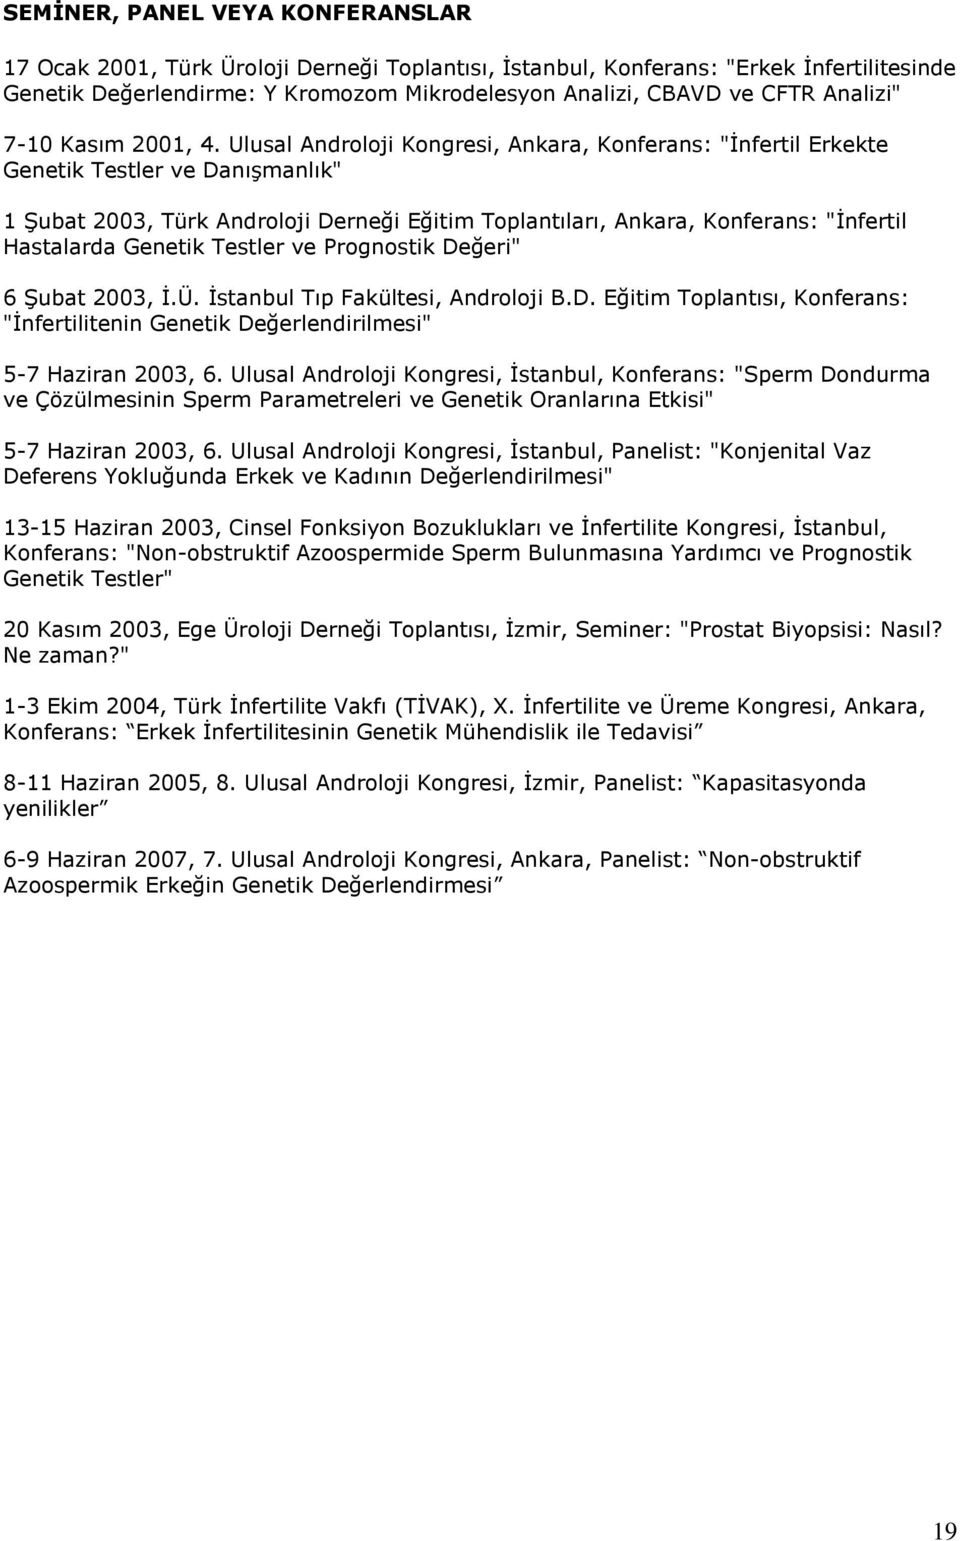 Ulusal Androloji Kongresi, Ankara, Konferans: "İnfertil Erkekte Genetik Testler ve Danışmanlık" 1 Şubat 2003, Türk Androloji Derneği Eğitim Toplantıları, Ankara, Konferans: "İnfertil Hastalarda